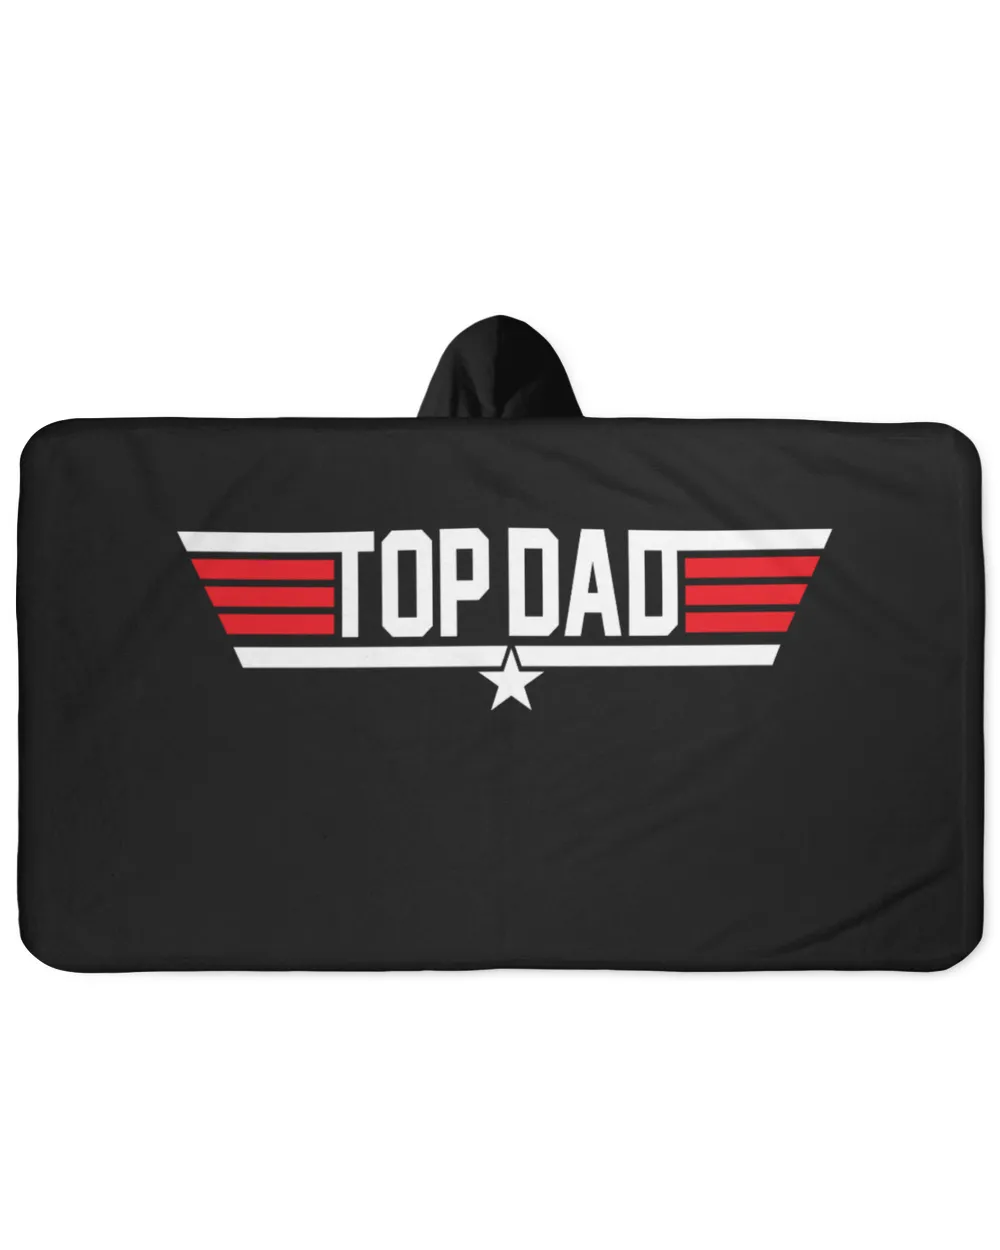 Top Dad Shirt